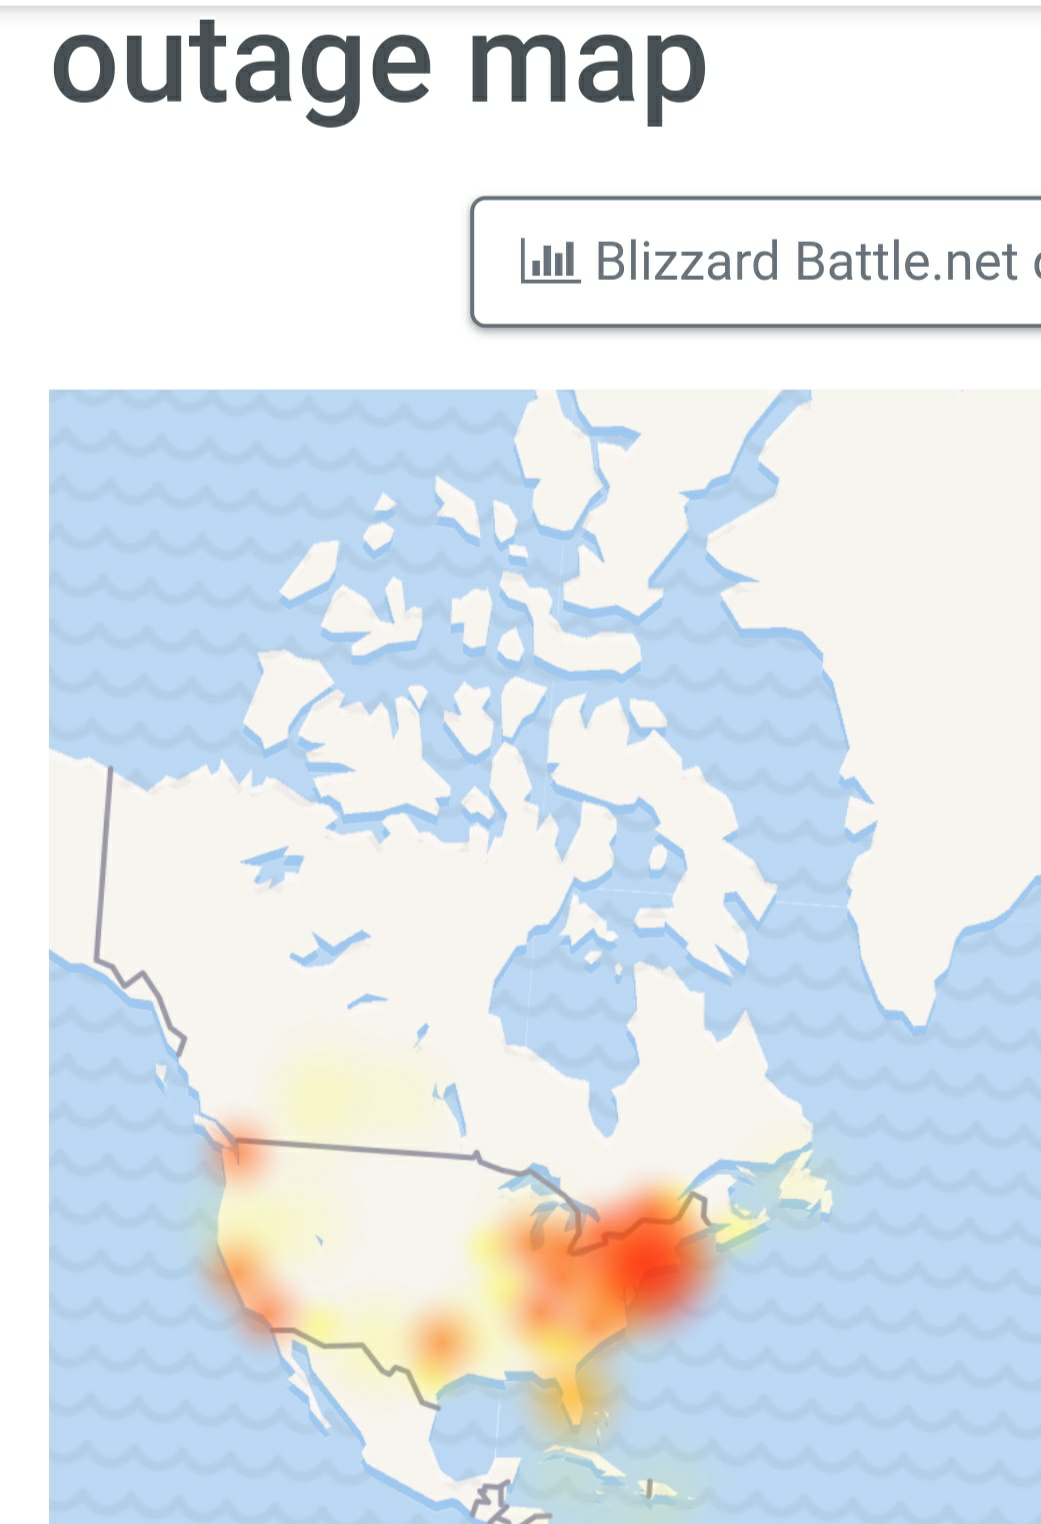 blizzard battle.net servers down